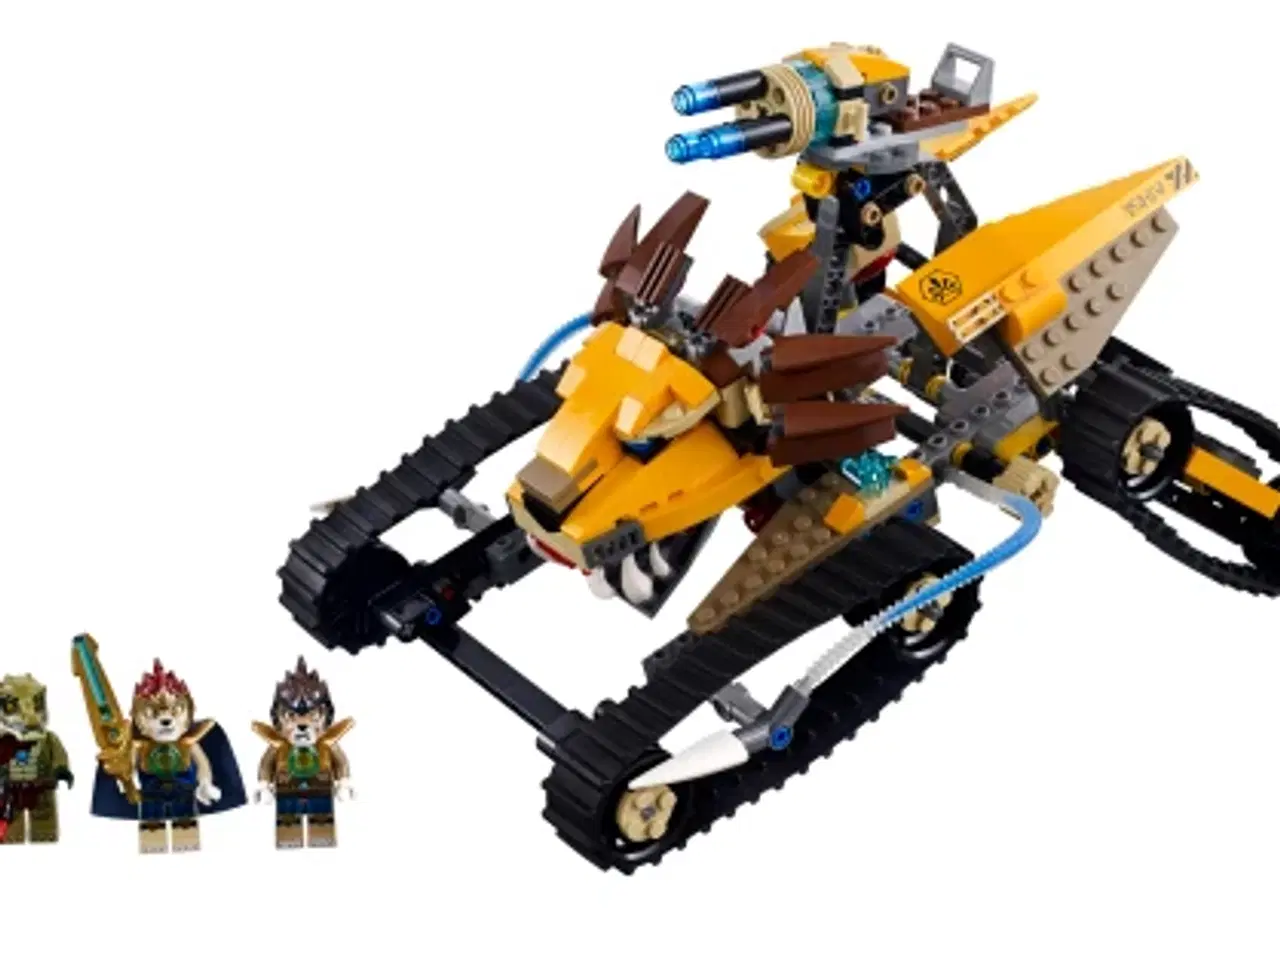 Billede 1 - LEGO Chima Lavals royale kampkøretøj model 70005